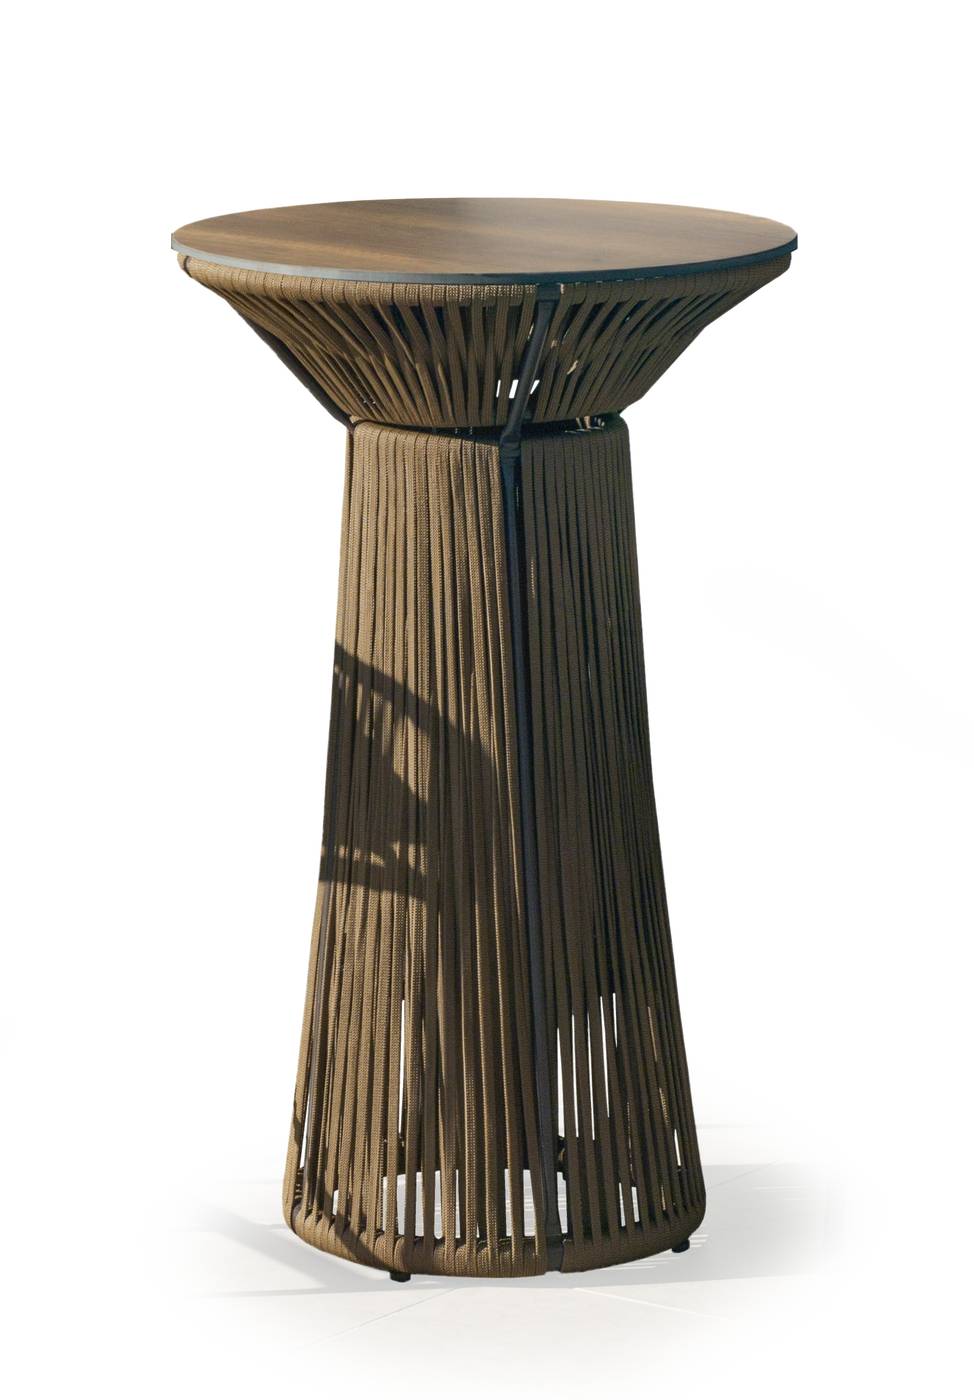 Mesa alta de coctel de 70 cm, con tablero HPL ultra resistente. Estructura aluminio revestida de cuerda. Colores: blanco, gris, marrón o champagne.